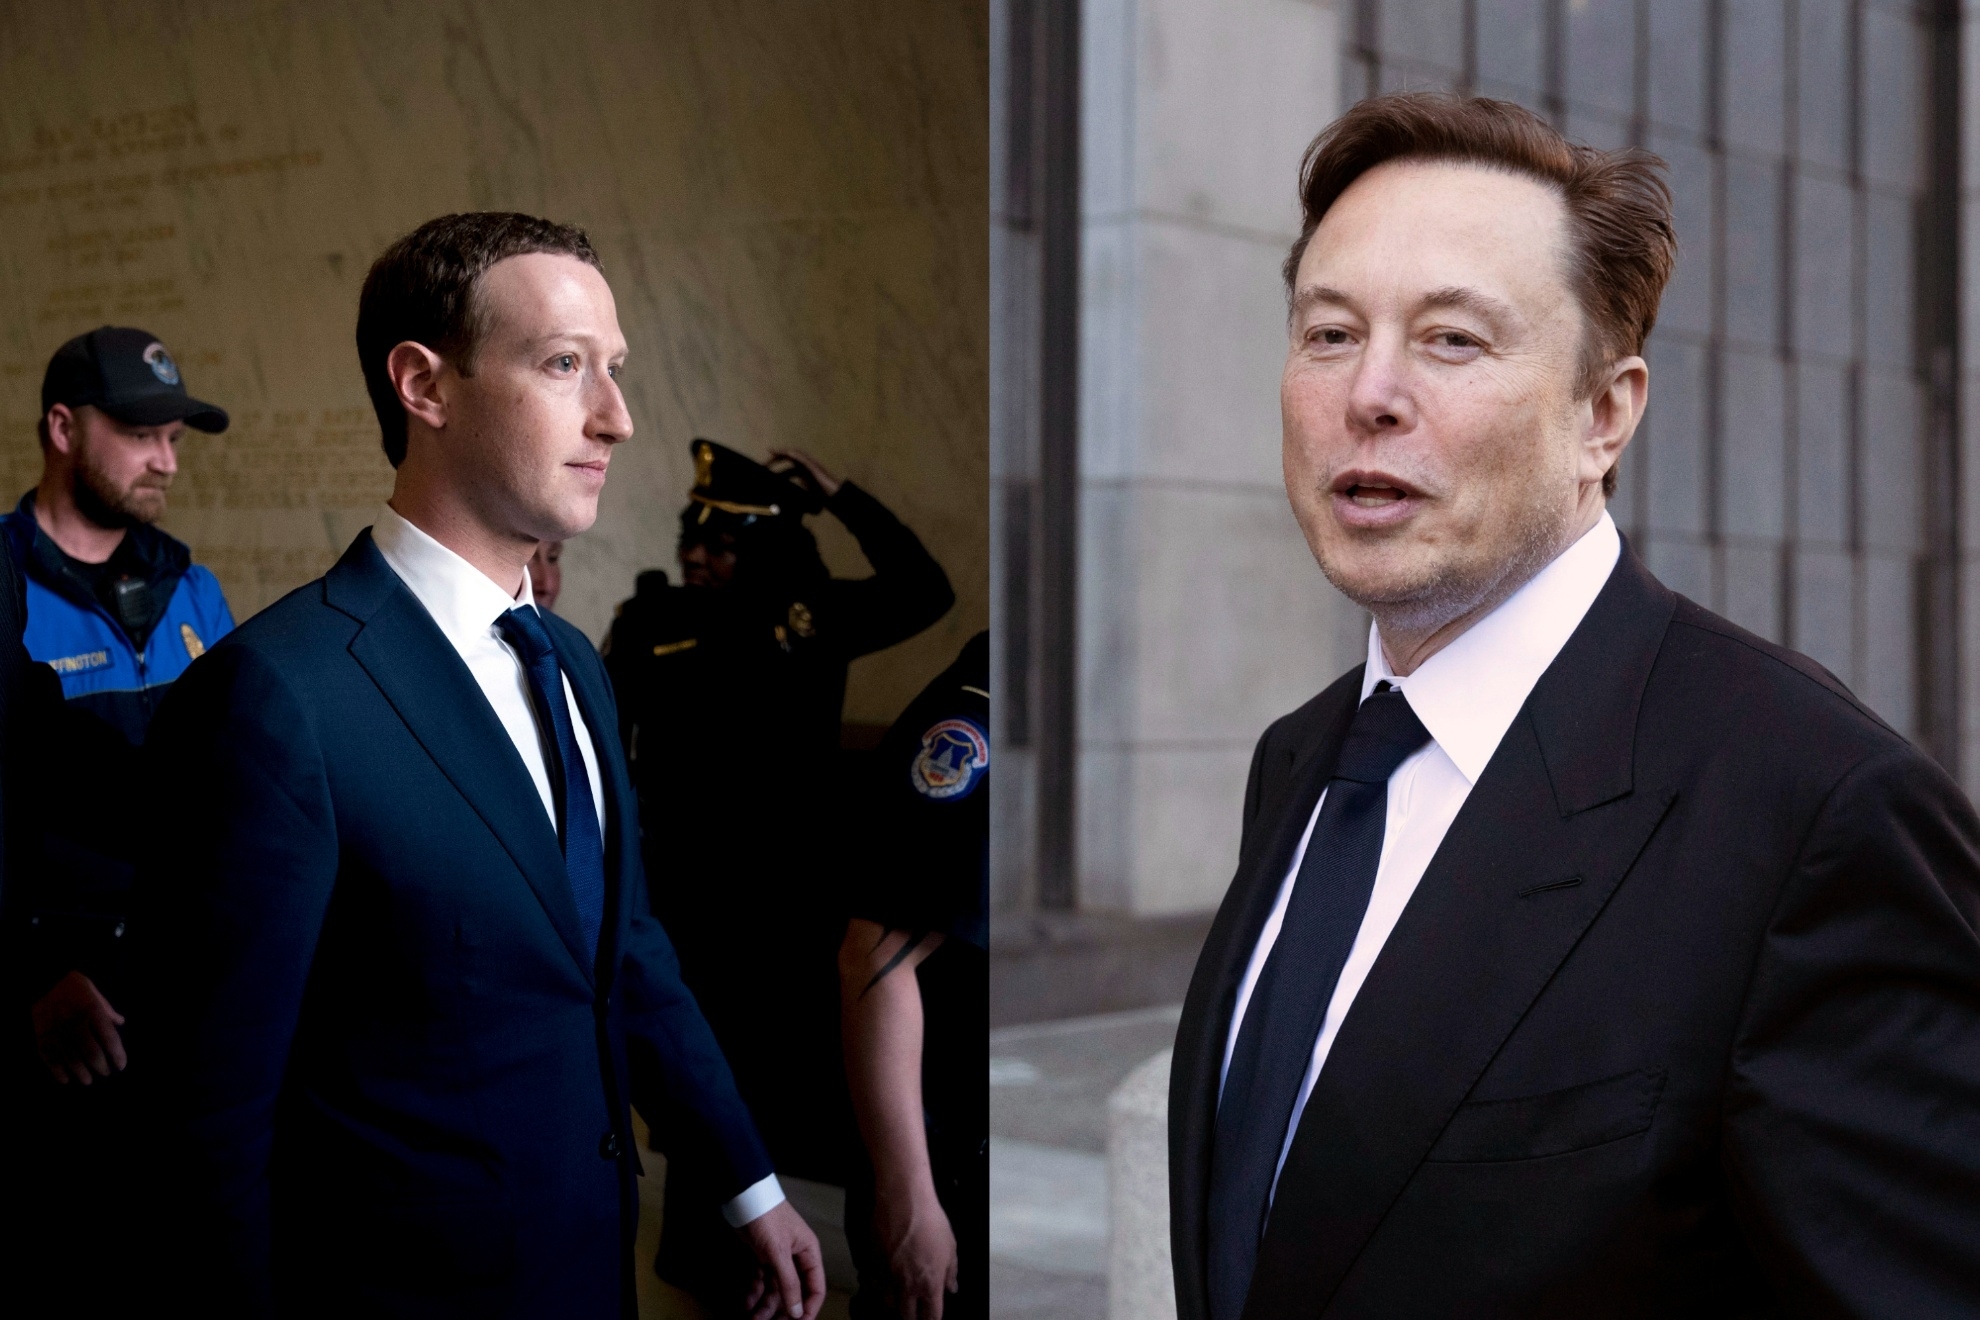 Mashup image of Mark Zuckerberg and Elon Musk